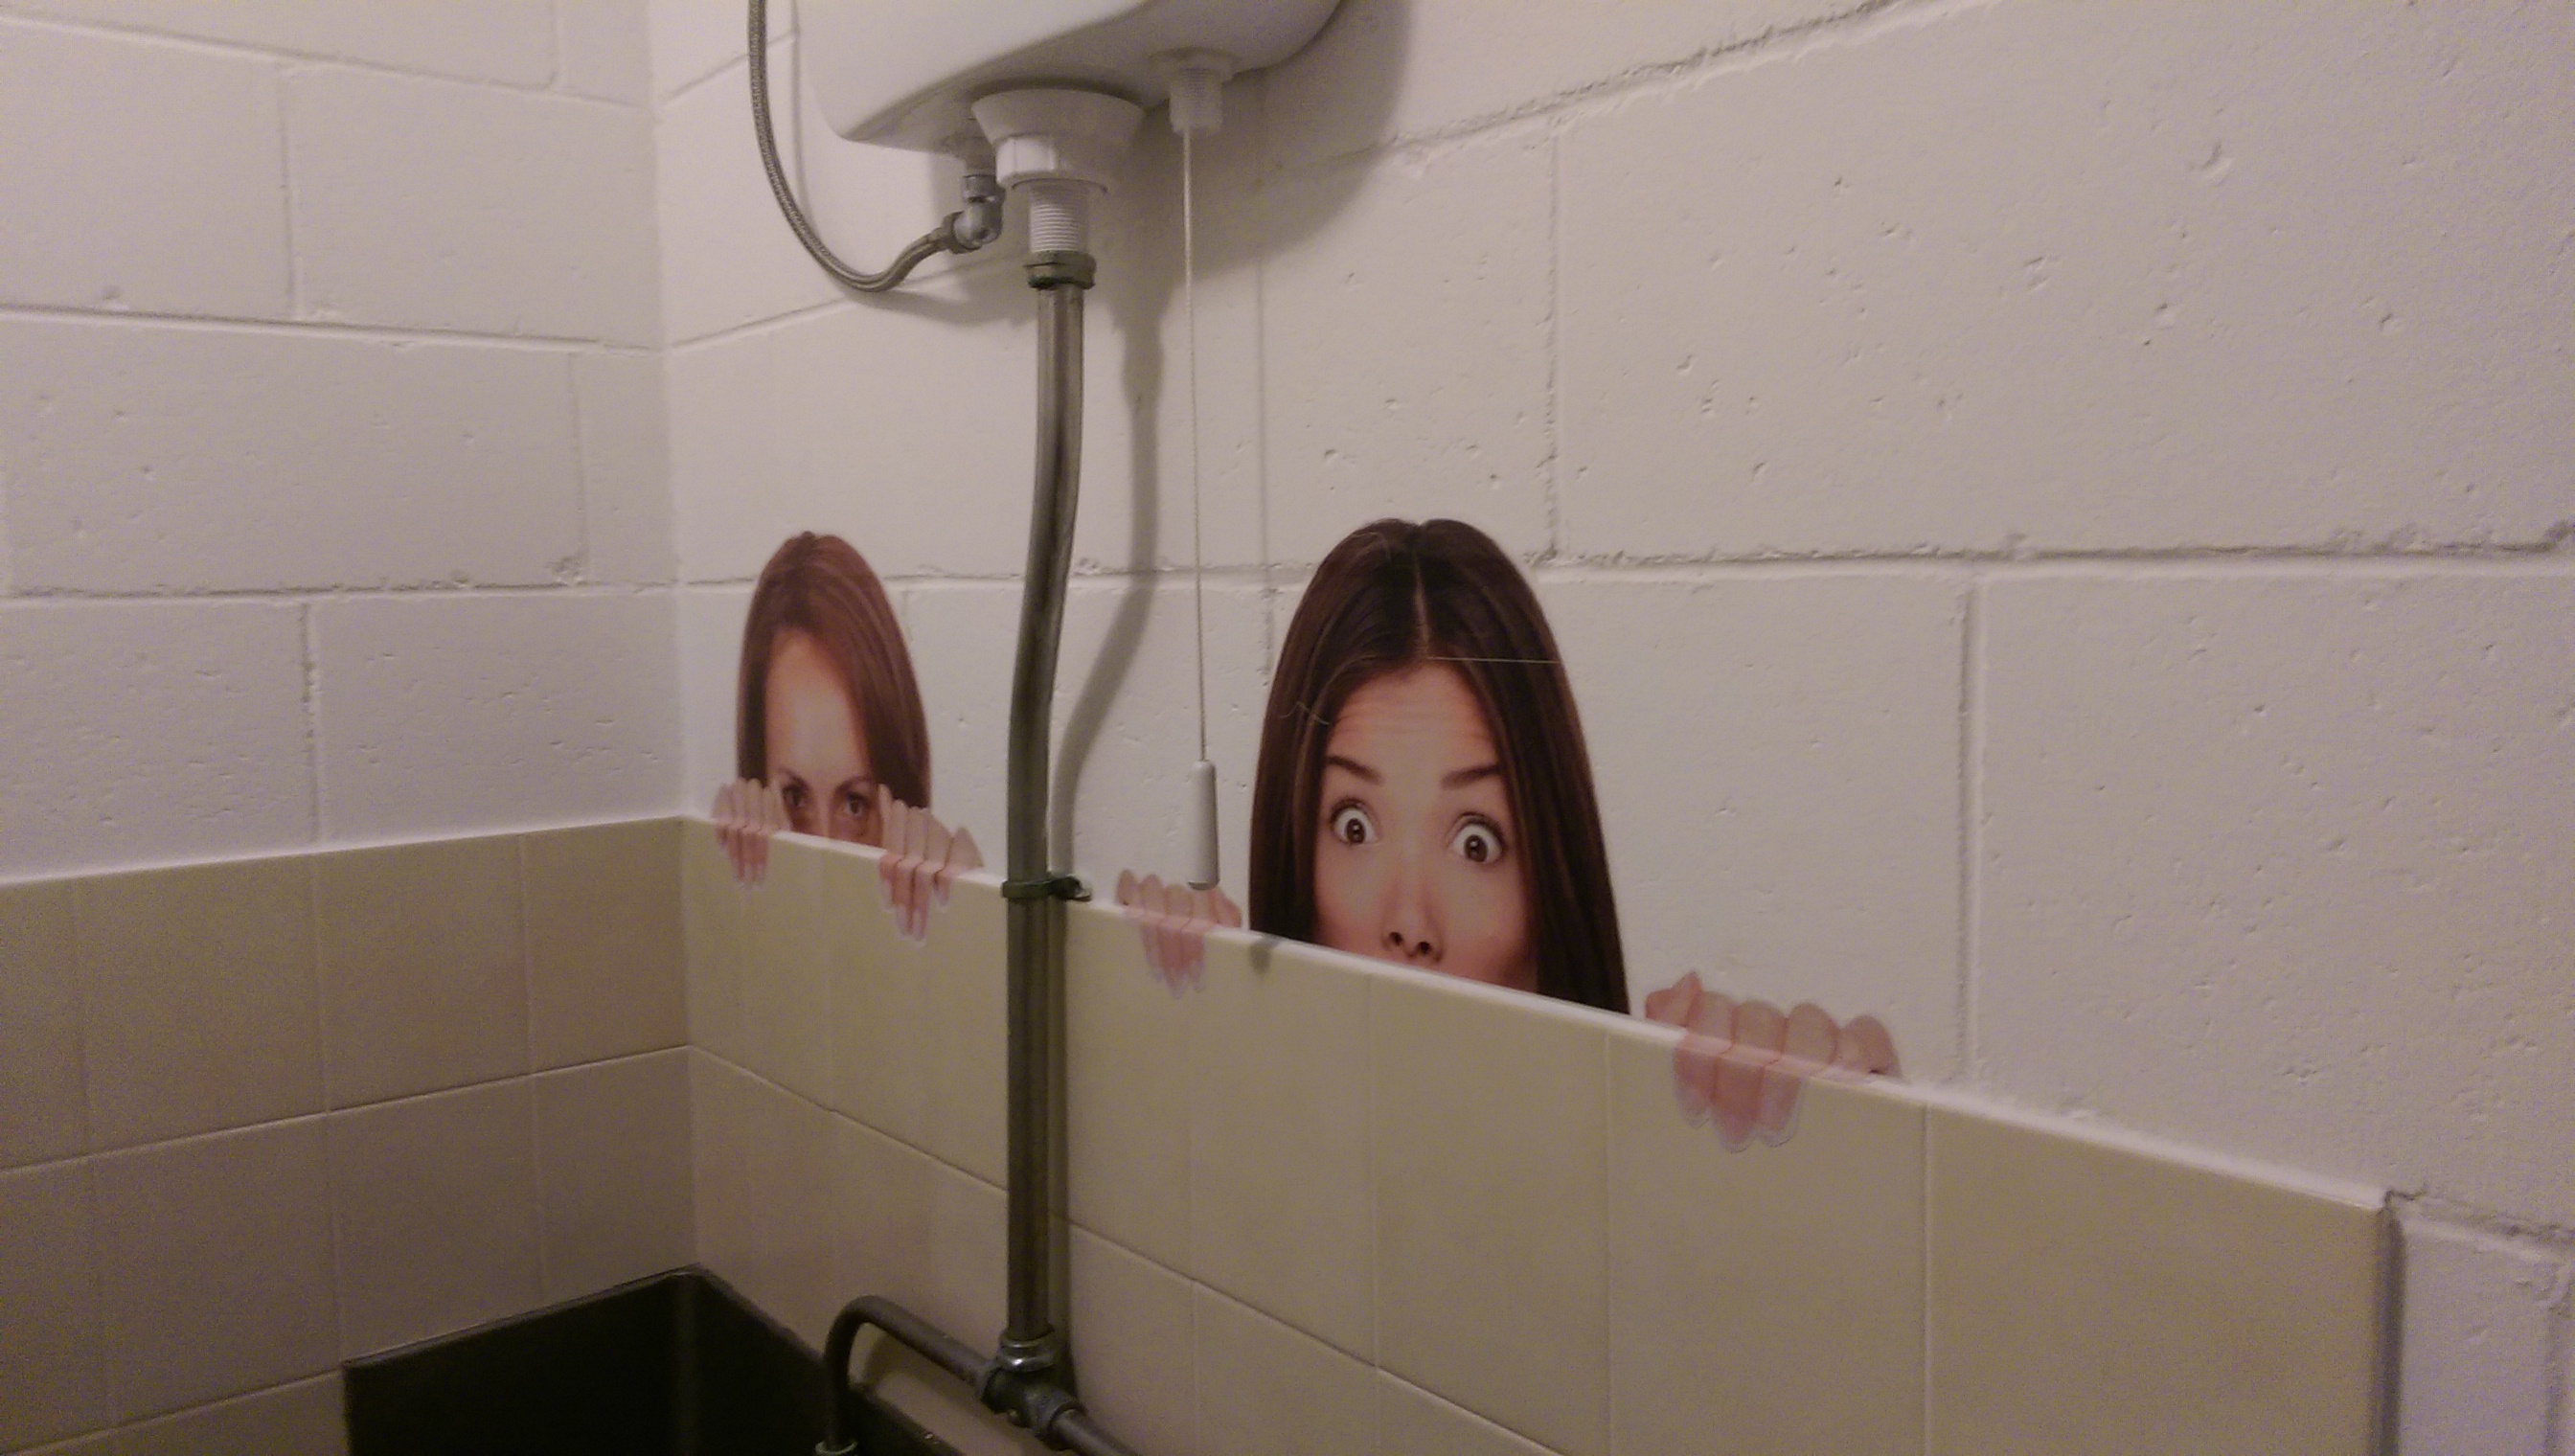 Скрытая камера шпионит за девушками в туалете